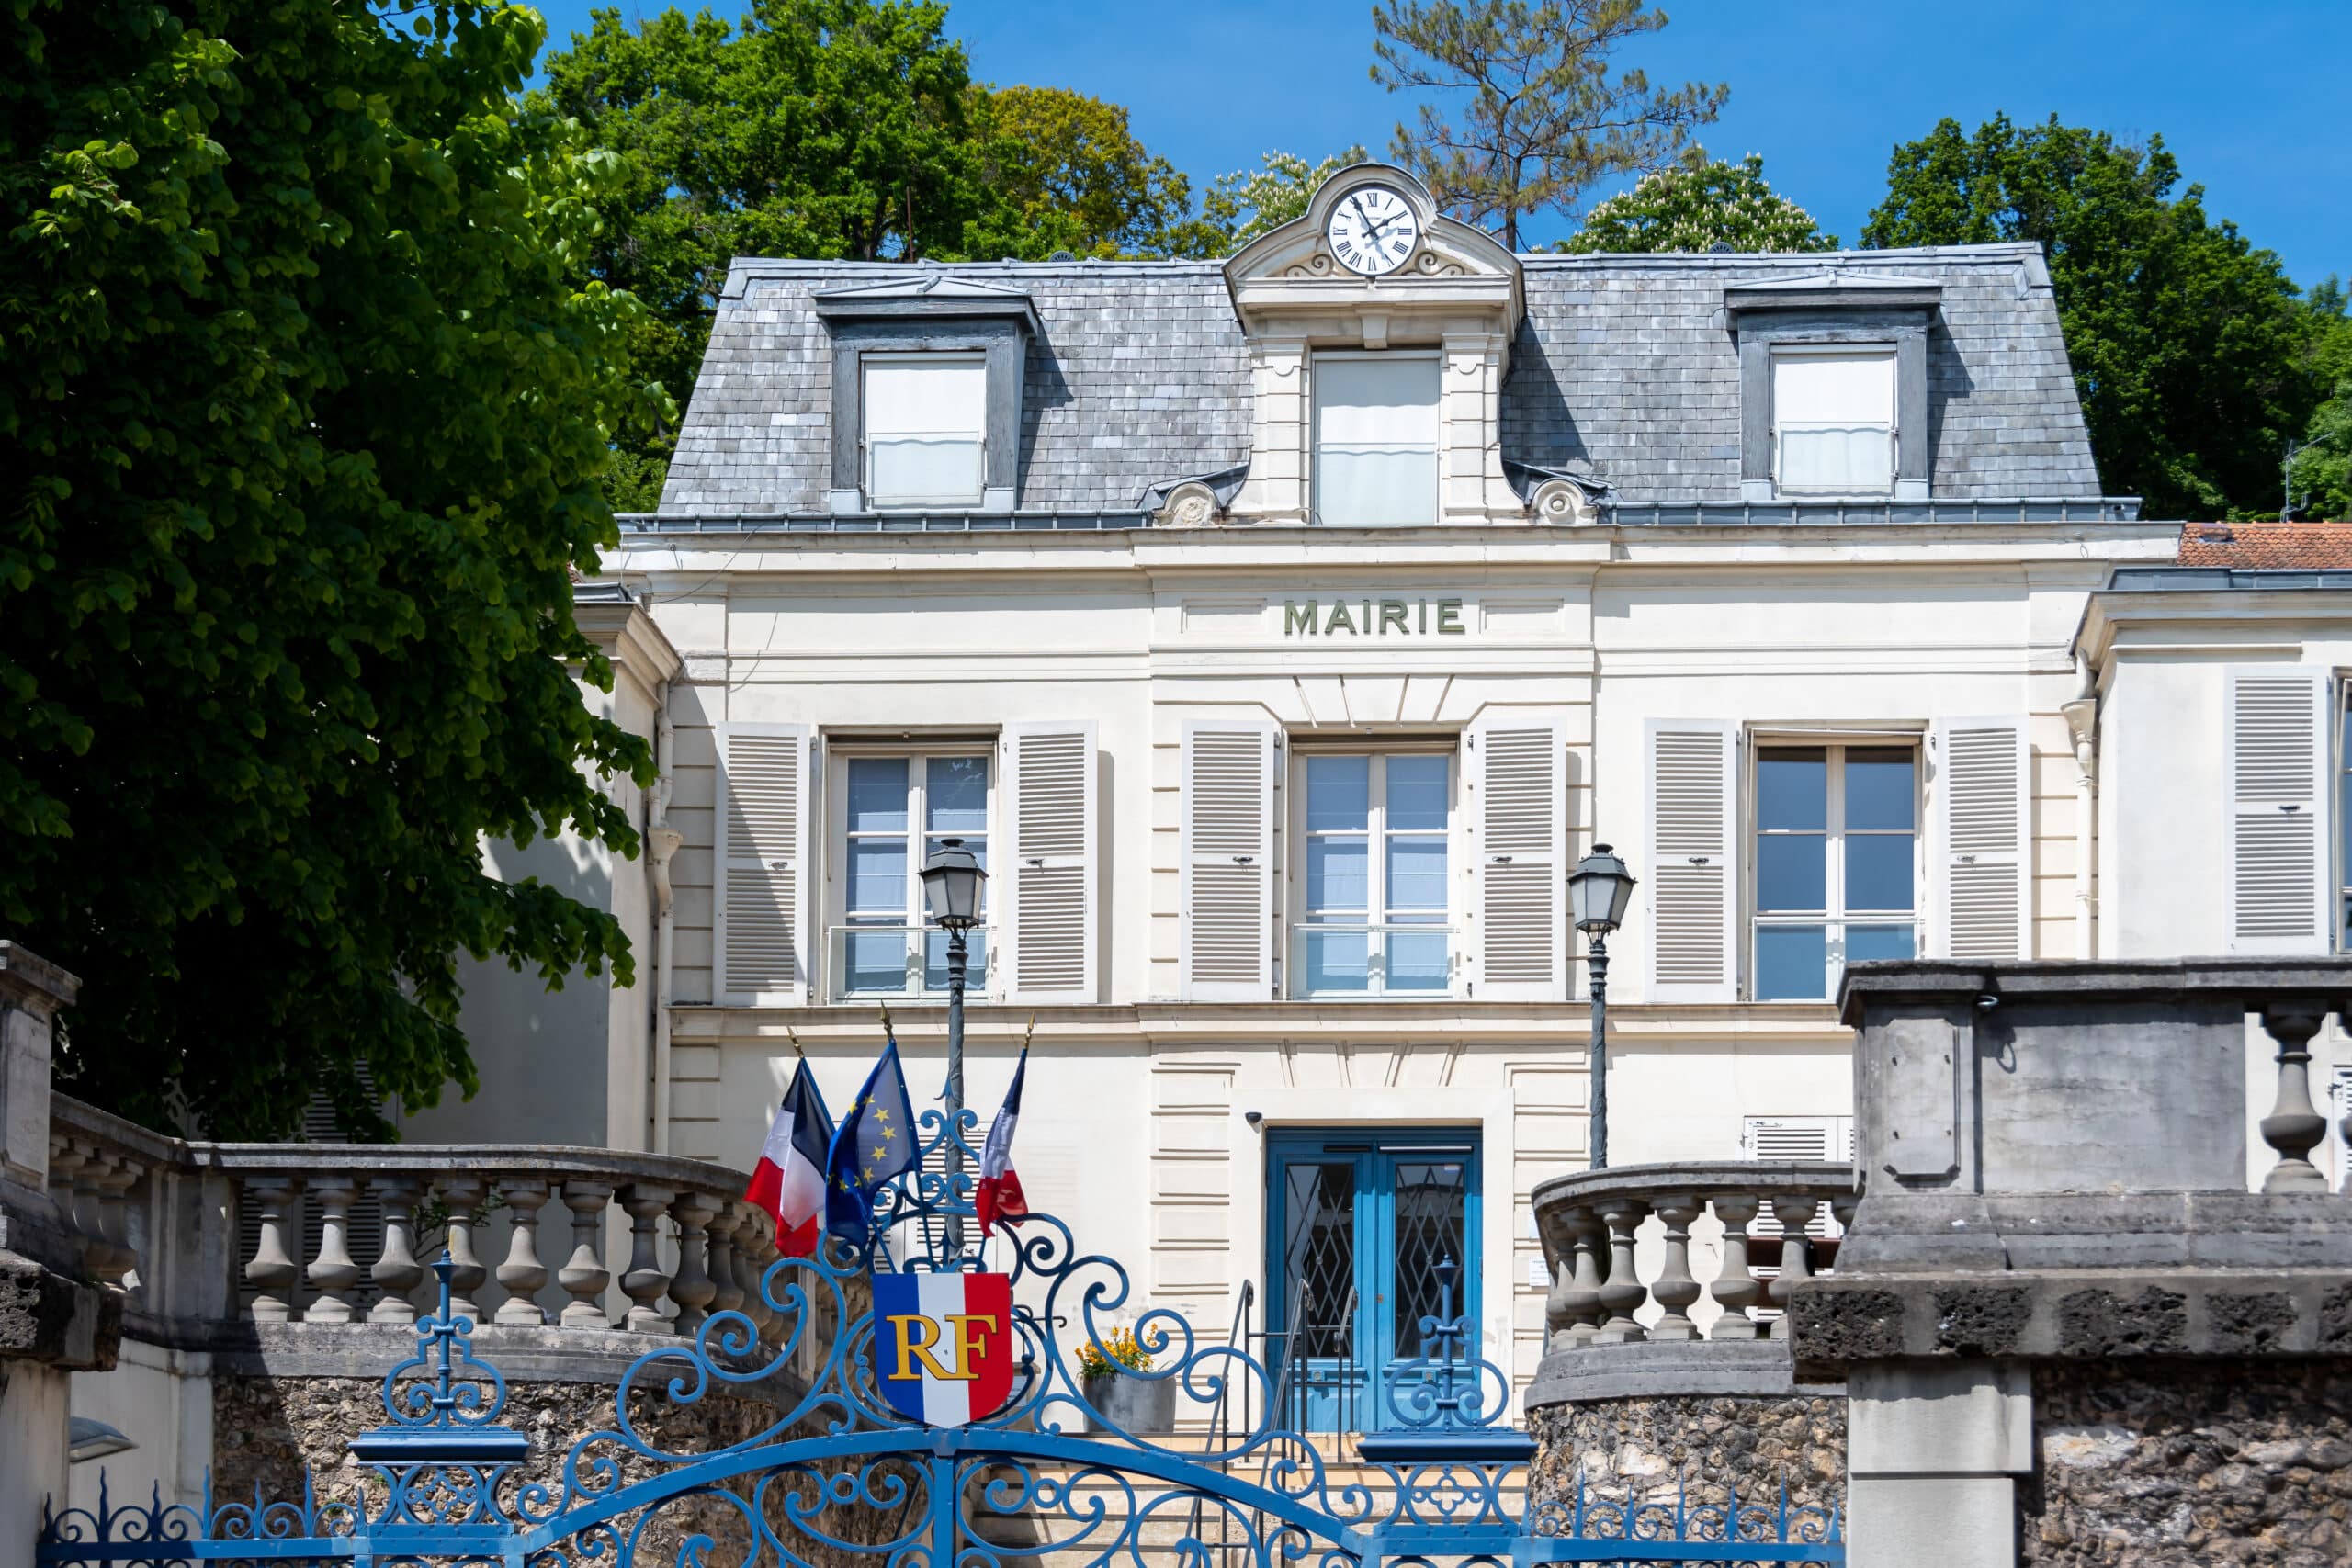 Vue extérieure de l'hôtel de ville de Ville-d'Avray France, commune de la banlieue ouest de Paris, située dans le département des Hauts-de-Seine